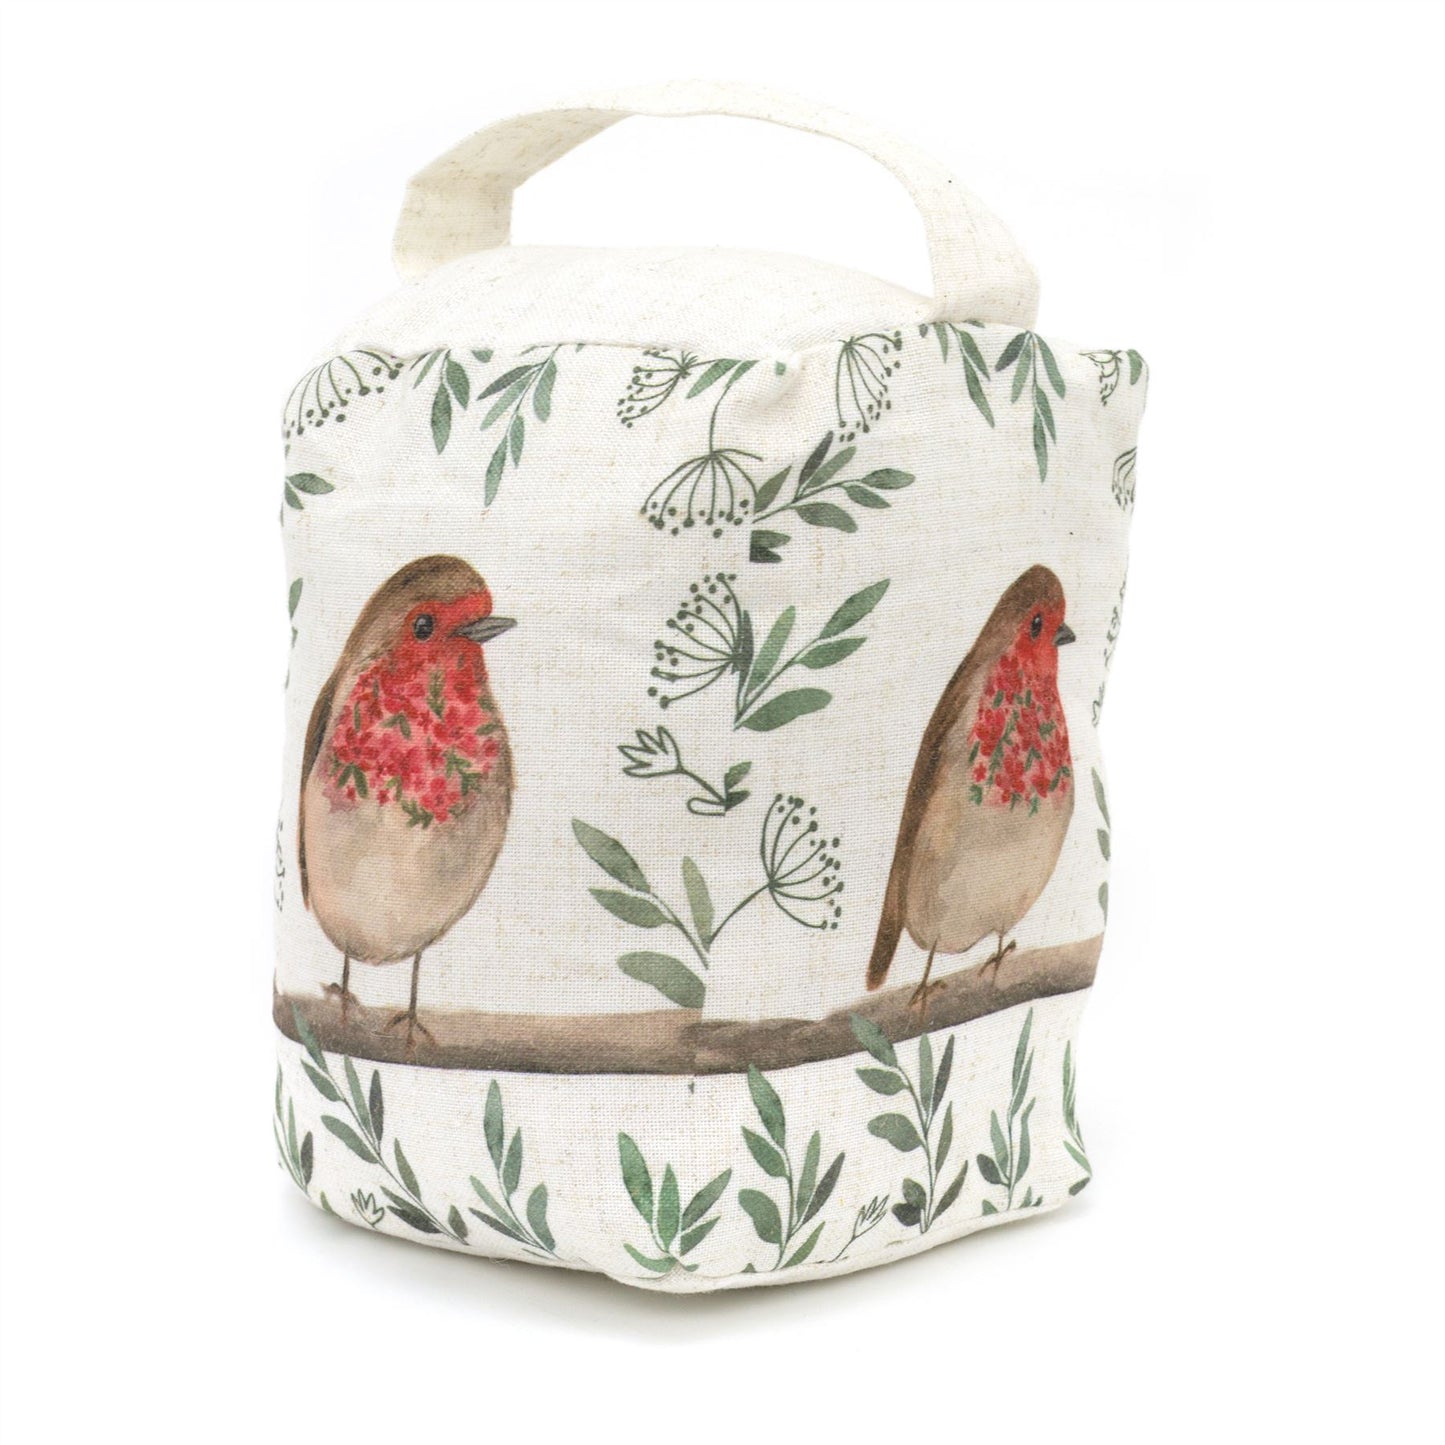 Robin Redbreast Bird Fabric Cube Door Stop | Decorative Bird Animal Doorstop | Country Life Door Stopper